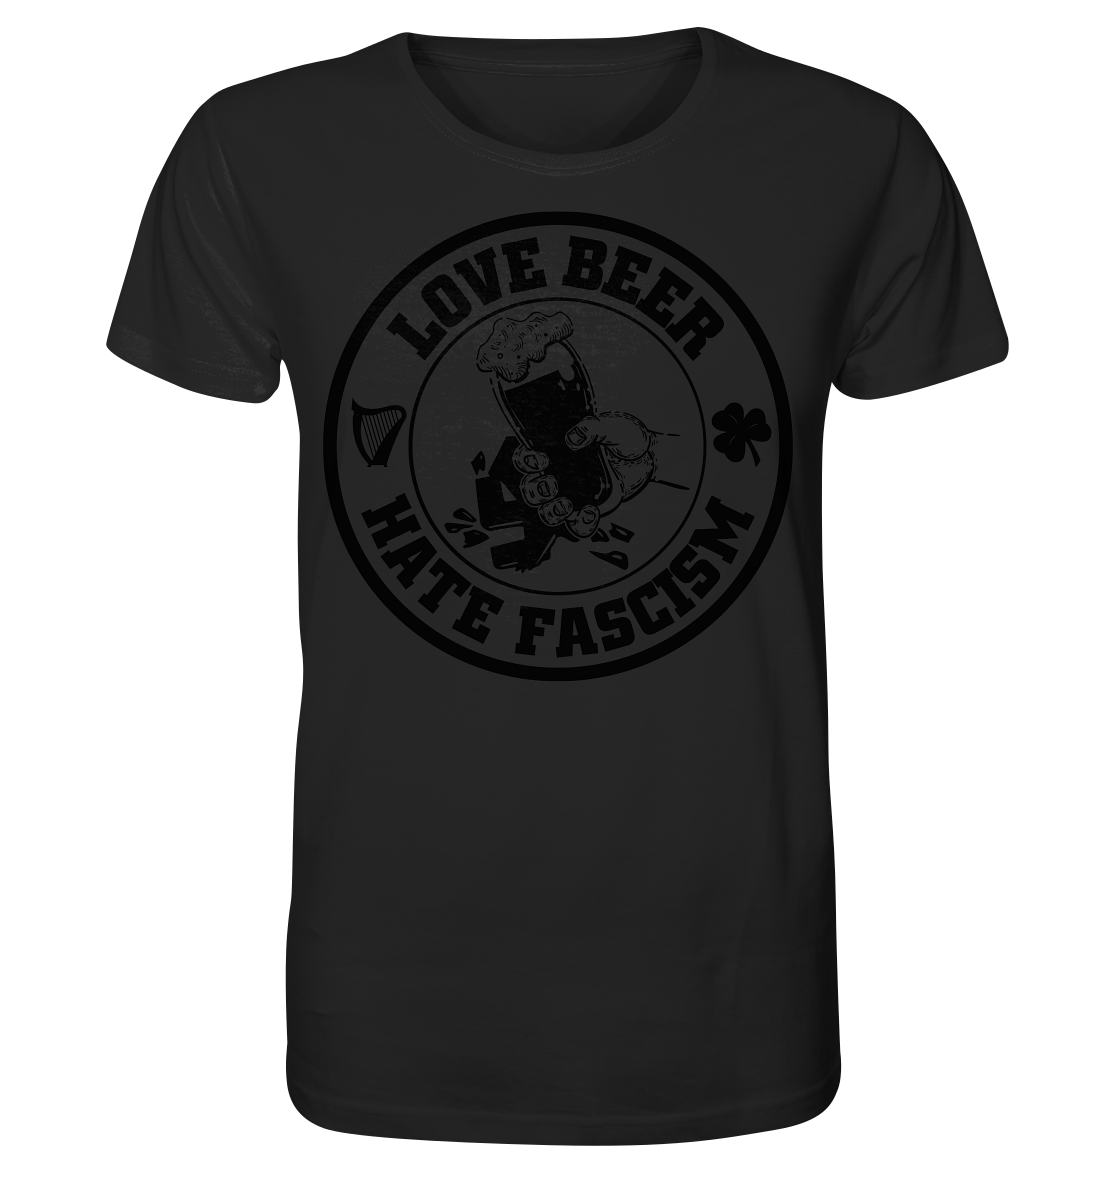 Love Beer - Hate Fascism - Organic Shirt